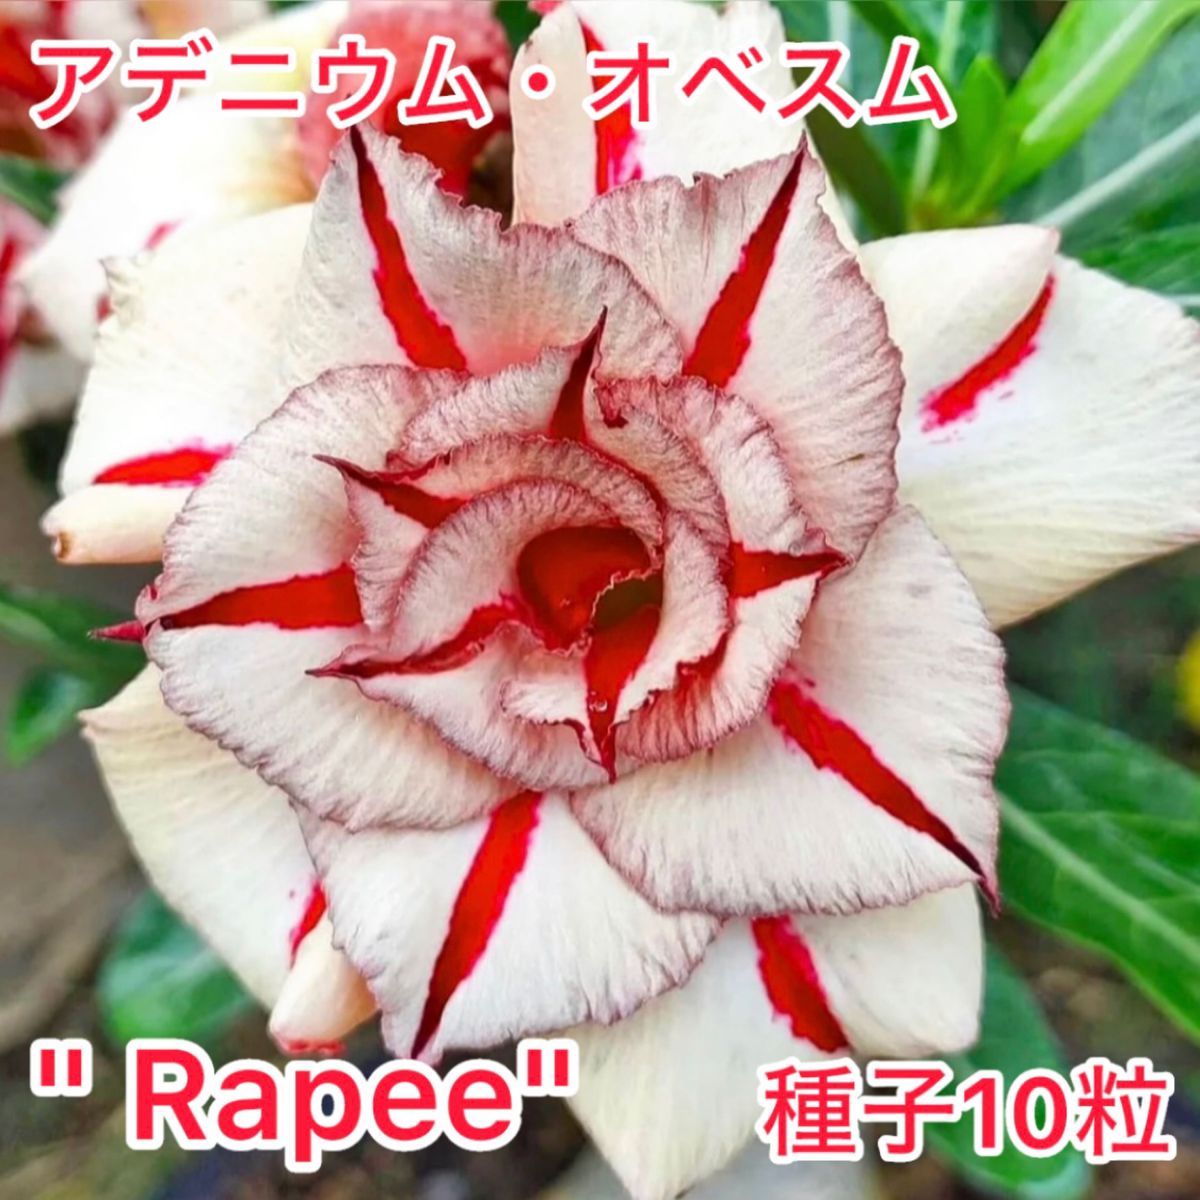 アデニウム・オベスム "Rapee" 種子10粒